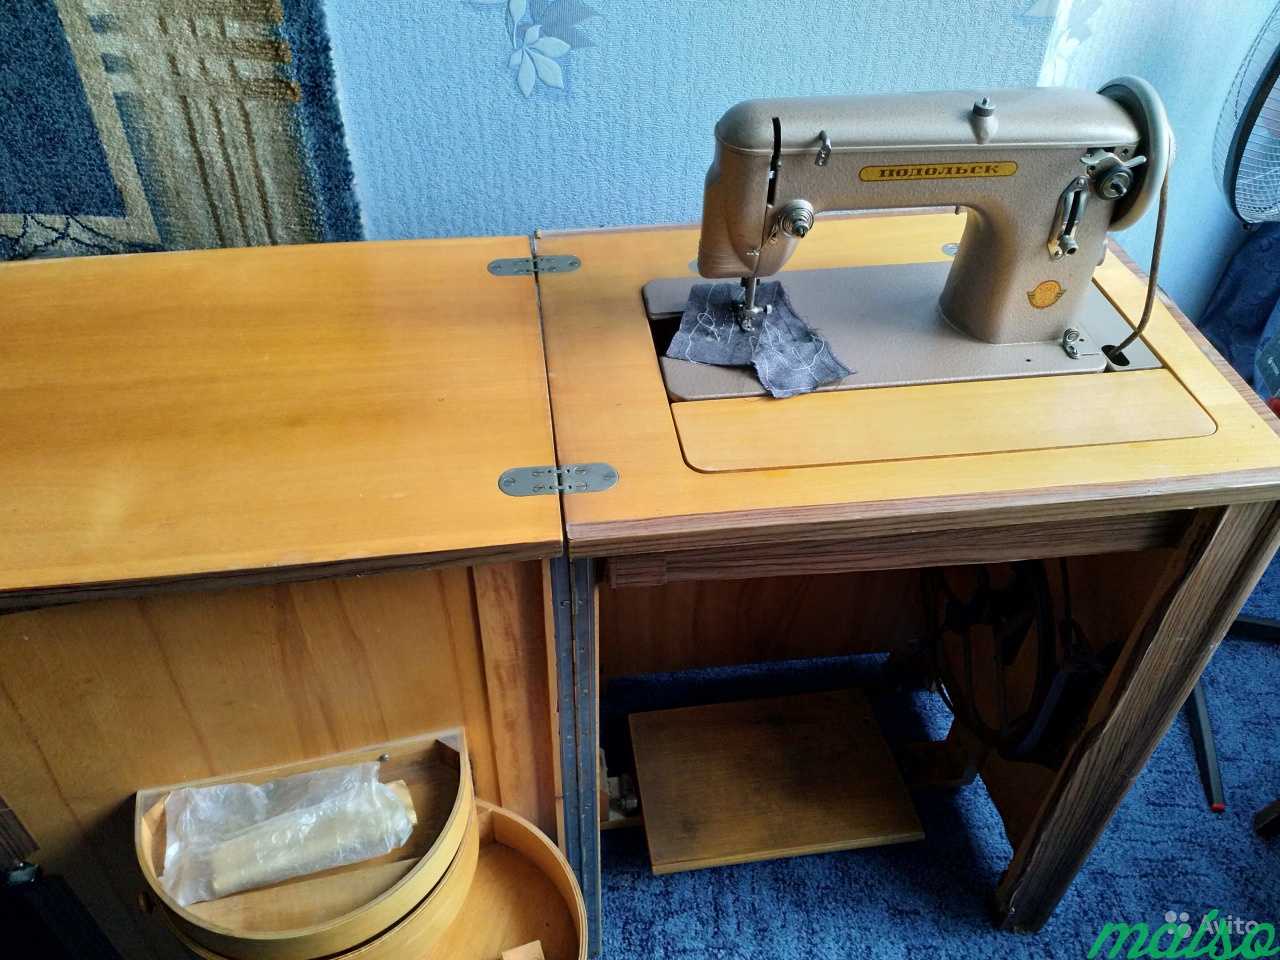 Подольска швейная машина с3106463